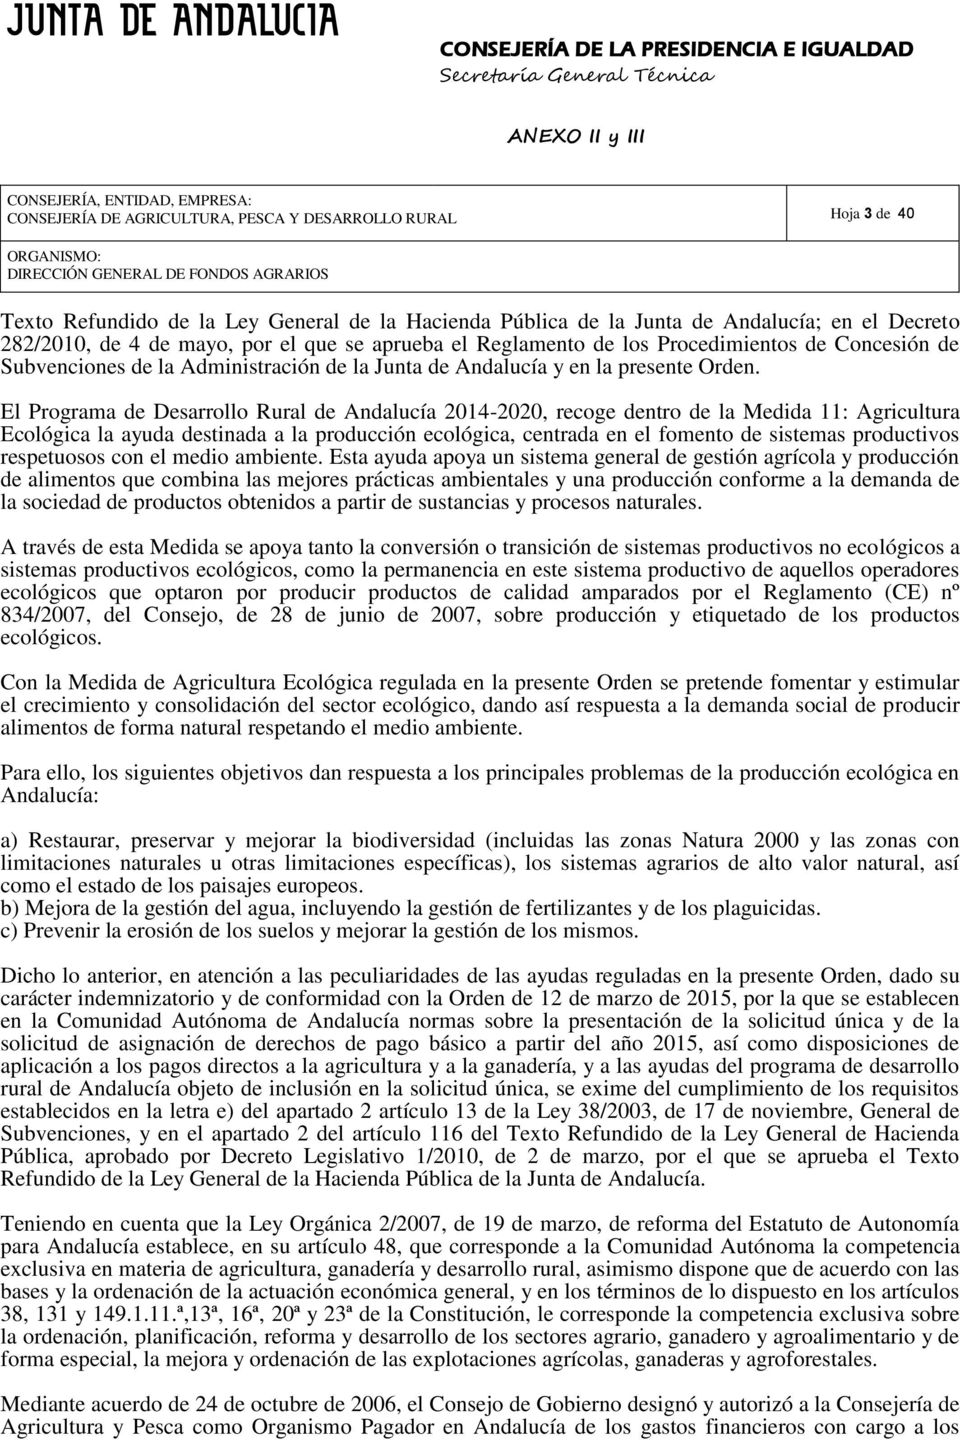 El Programa de Desarrollo ural de Andalucía 2014-2020, recoge dentro de la Medida 11: Agricultura Ecológica la ayuda destinada a la producción ecológica, centrada en el fomento de sistemas